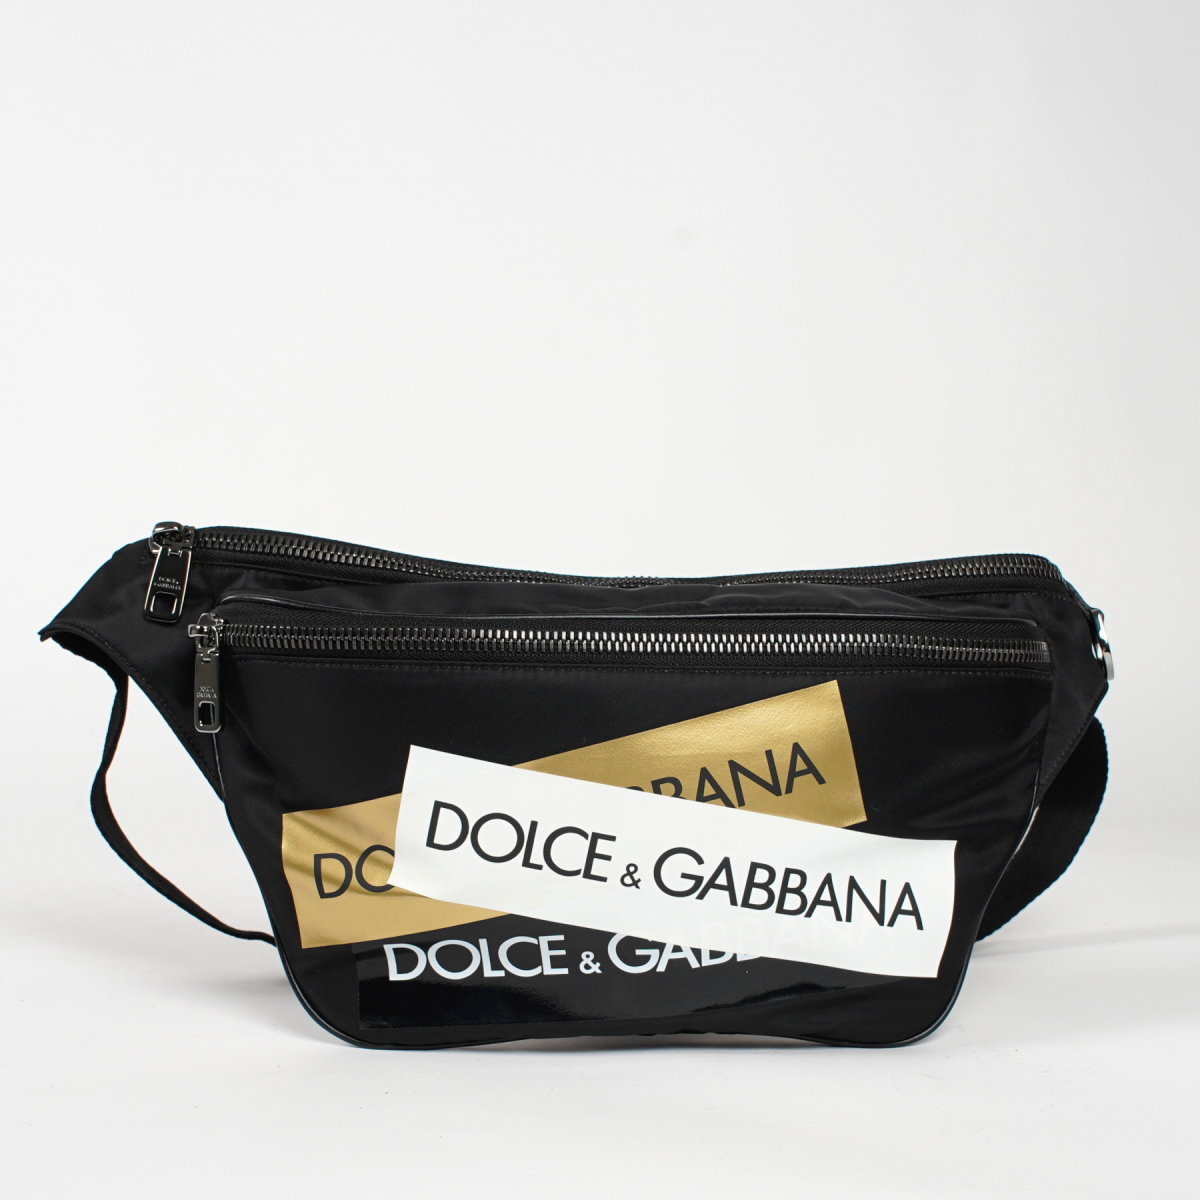 Dolce&Gabbana Banane